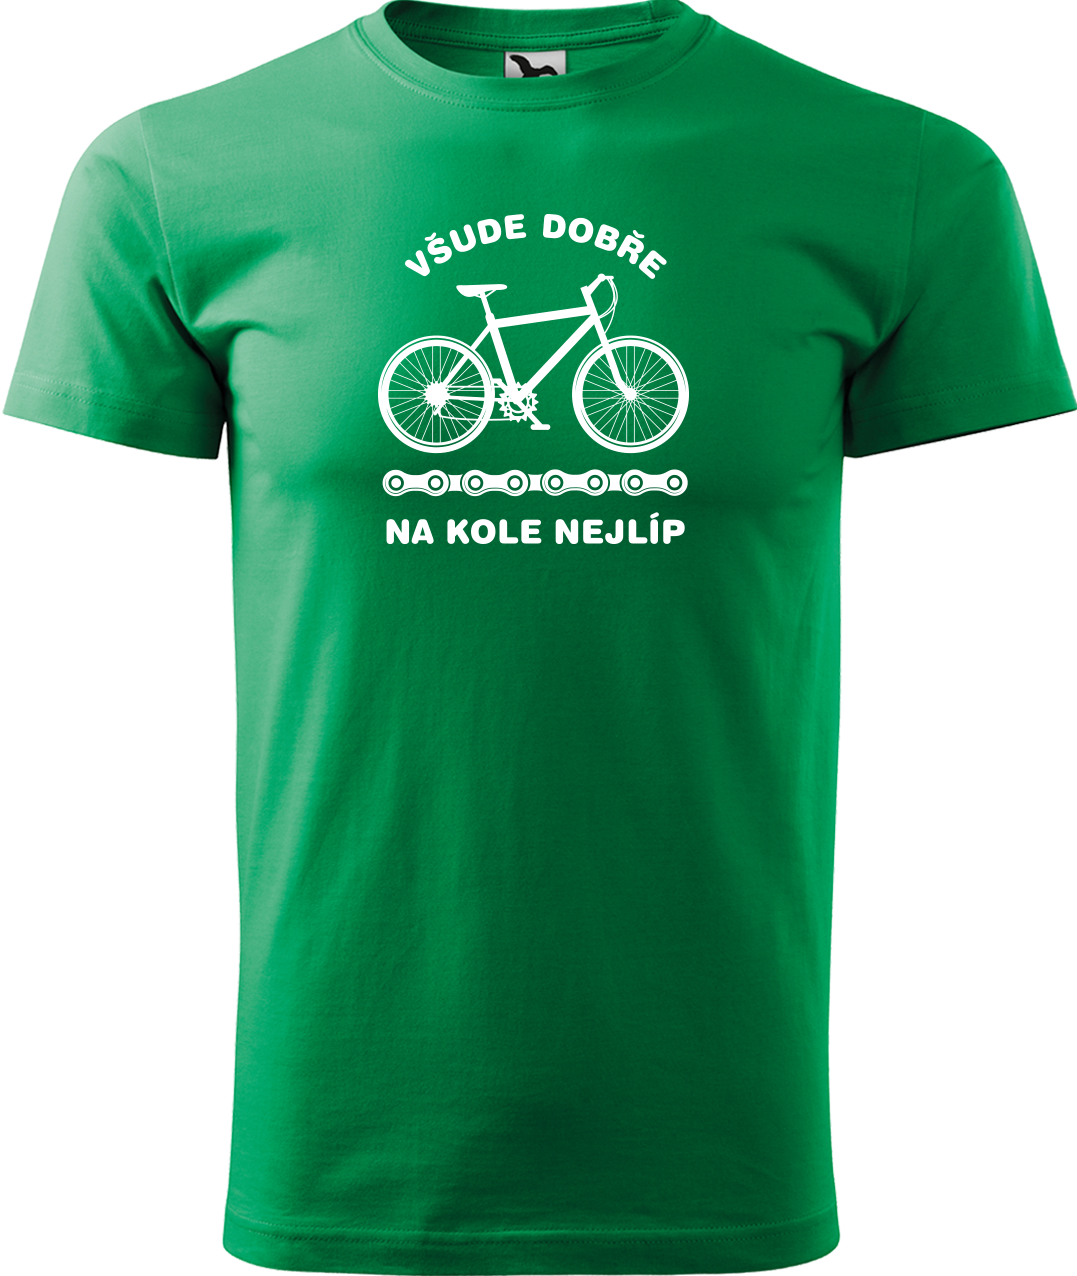 Pánské tričko s kolem - Všude dobře, na kole nejlíp Velikost: 3XL, Barva: Středně zelená (16)